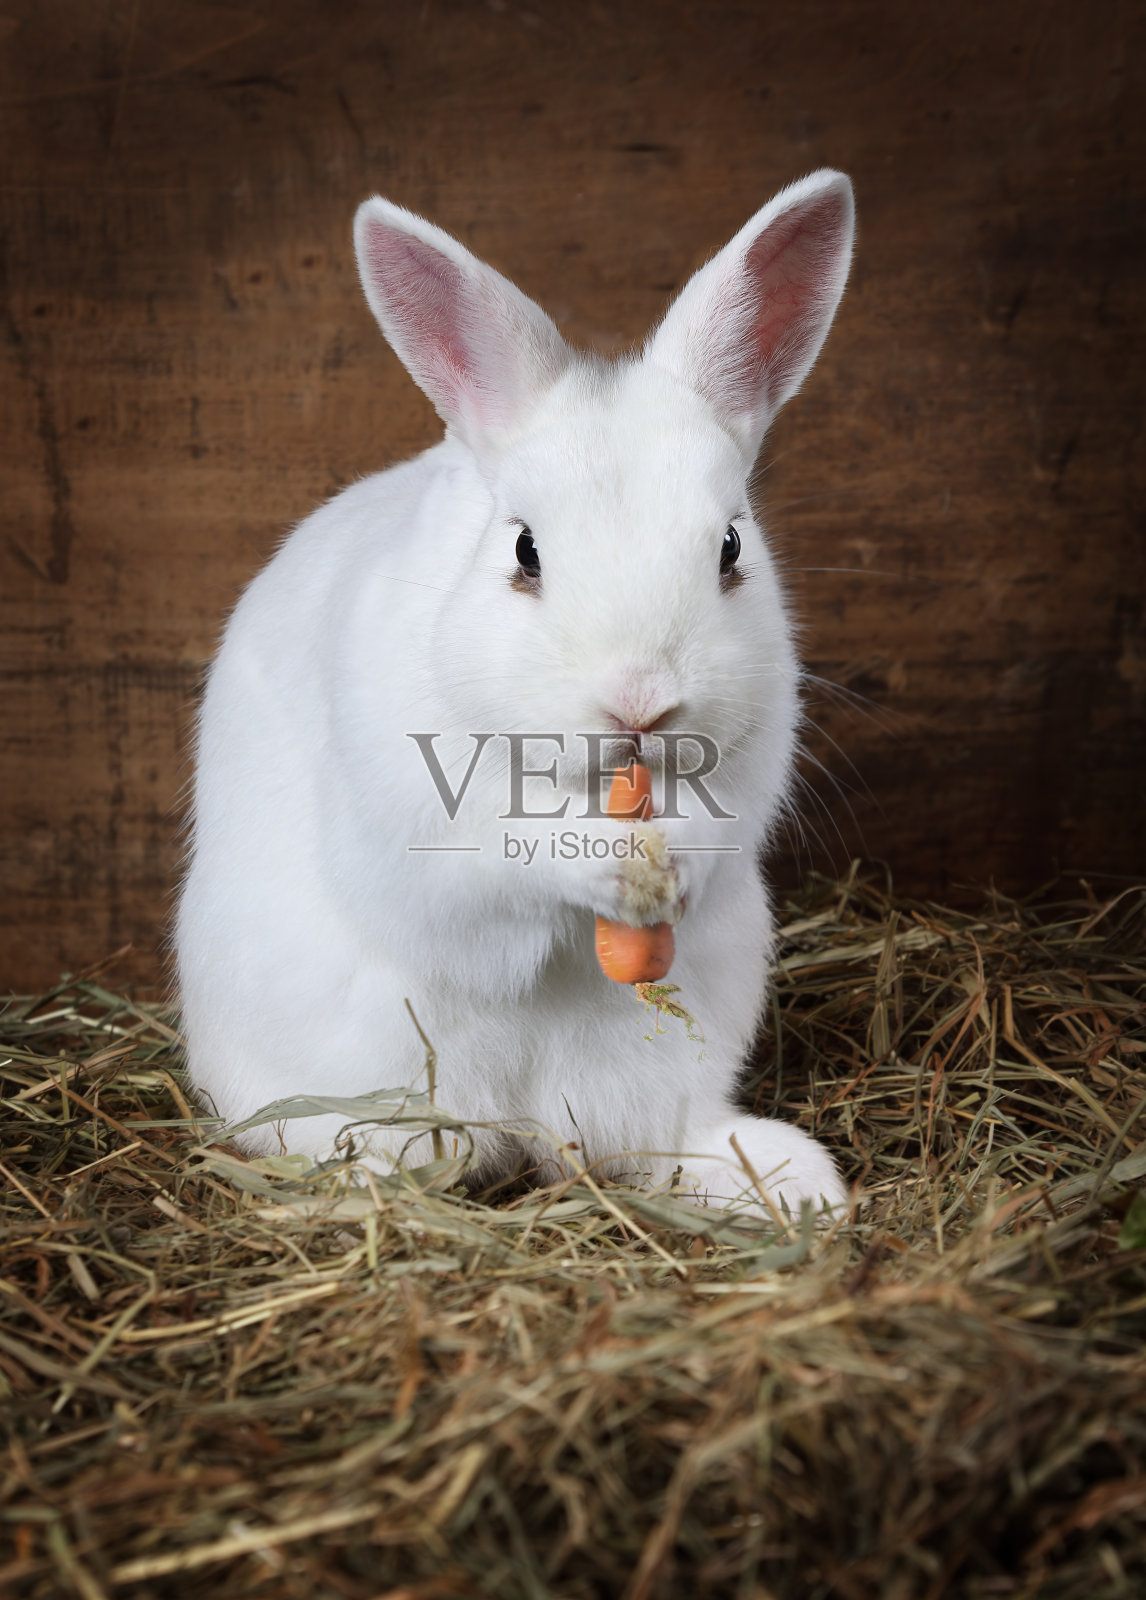 一只小棕兔正坐在篮子里吃蔬菜 篮子里有胡萝卜和莴苣 它放在 库存图片 - 图片 包括有 果子, 复活节: 157195257